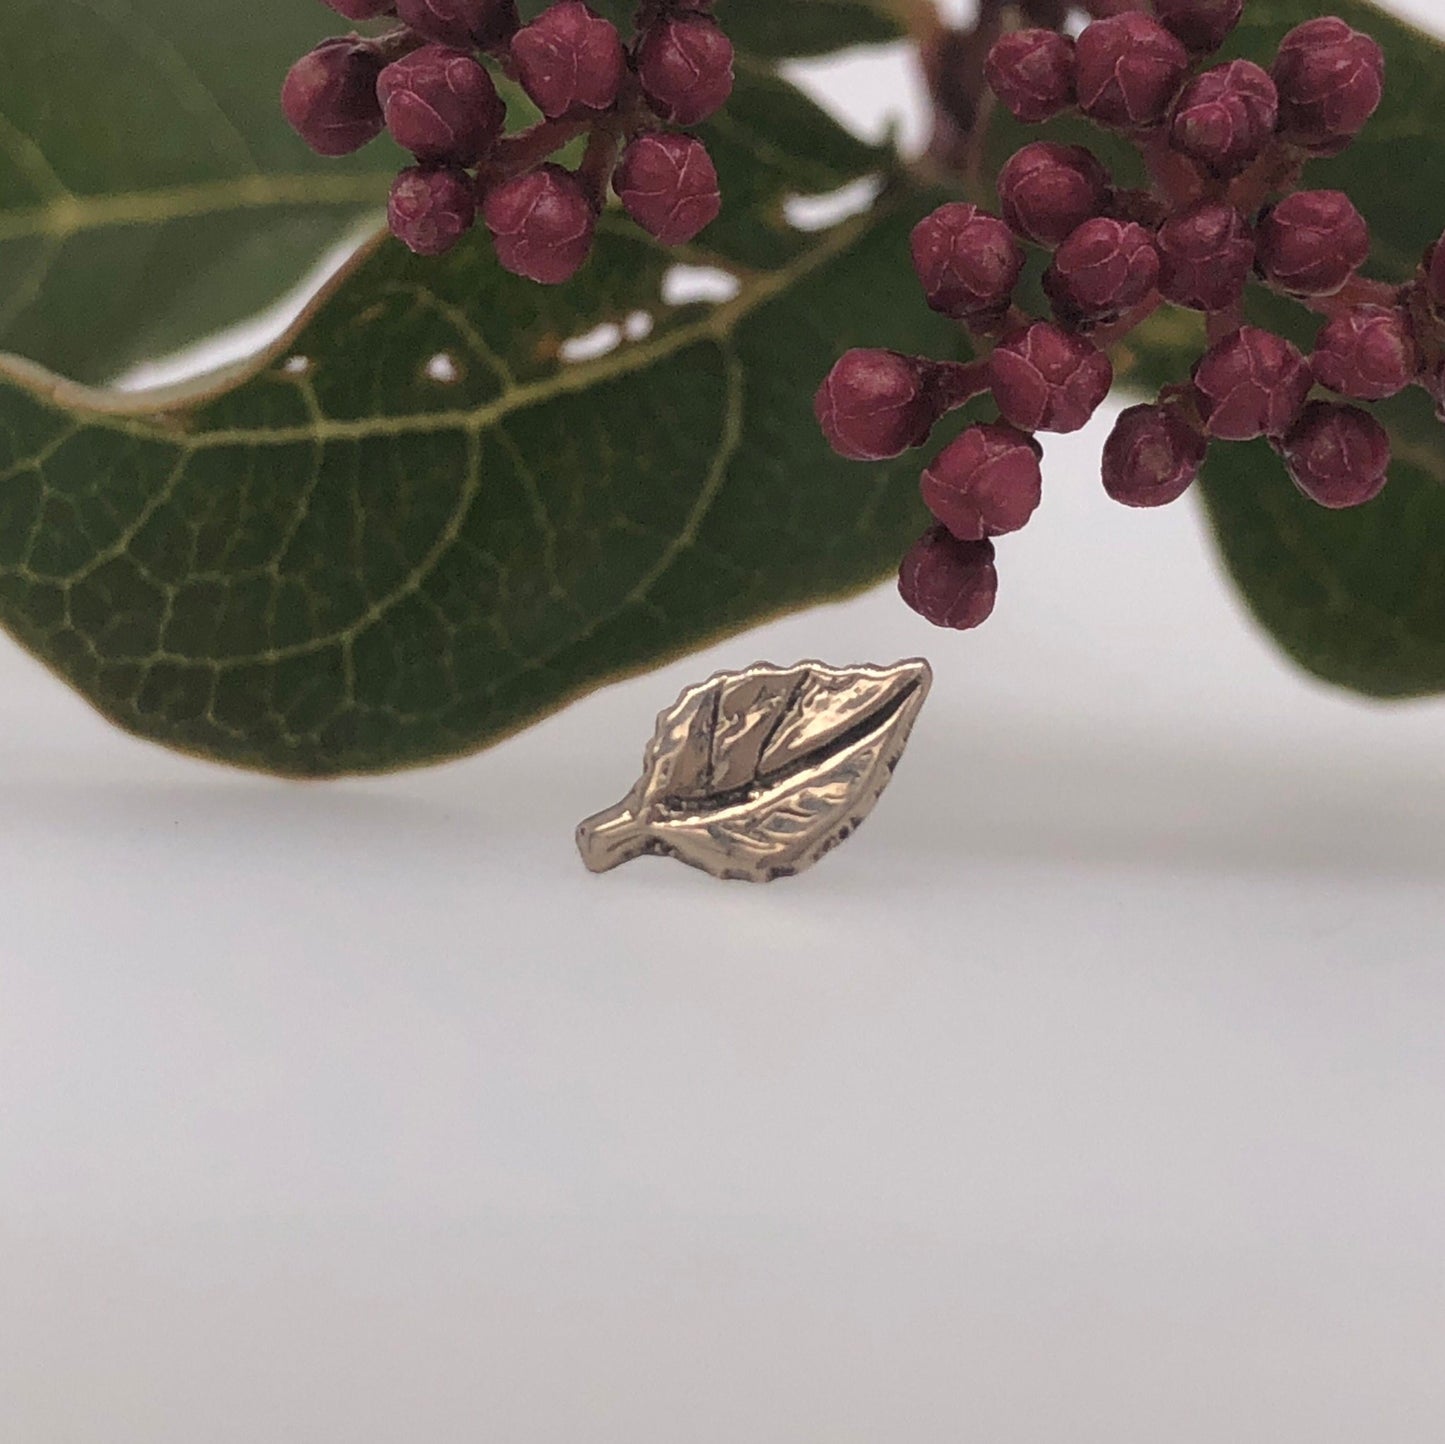 Aspen Leaf - Agave in Bloom